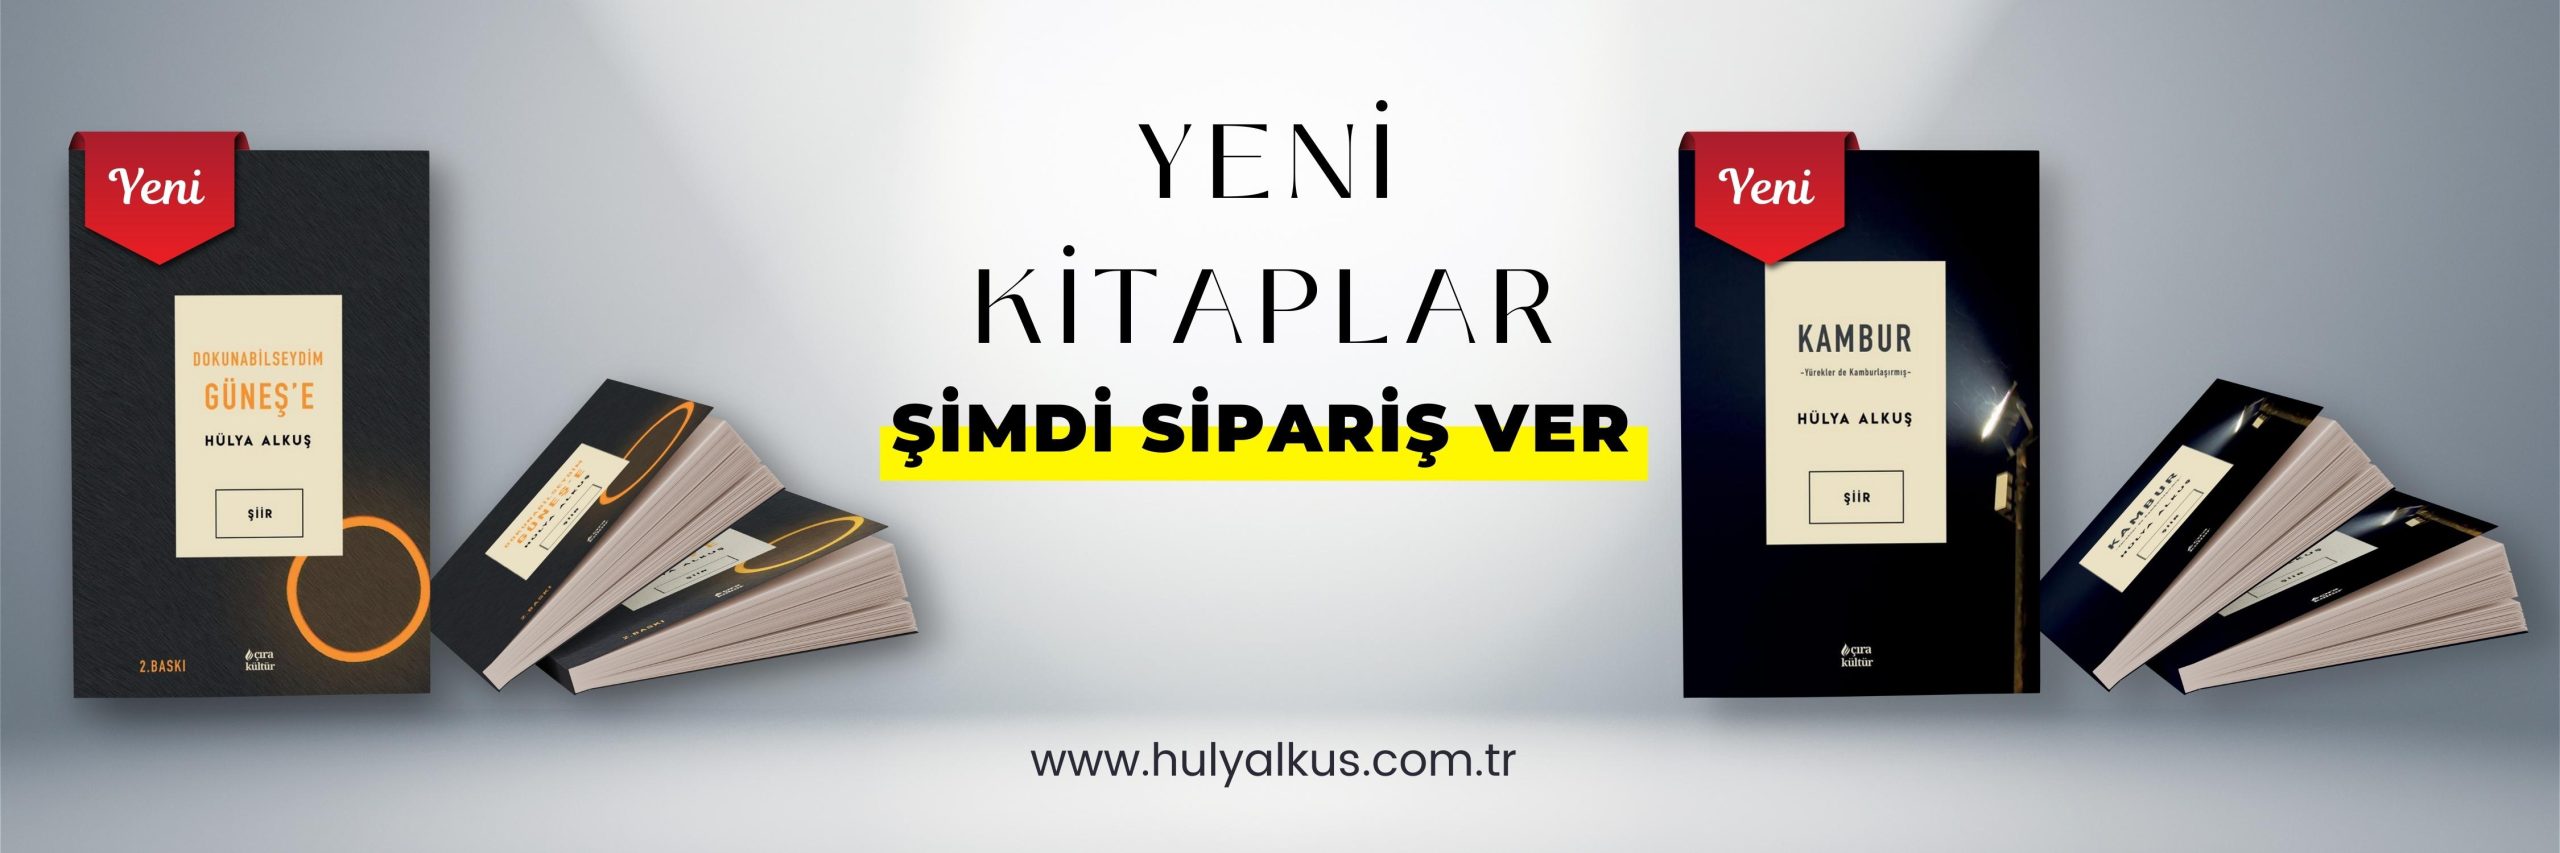 Hülya Alkuş - New Books - ÇIRA KÜLTÜR